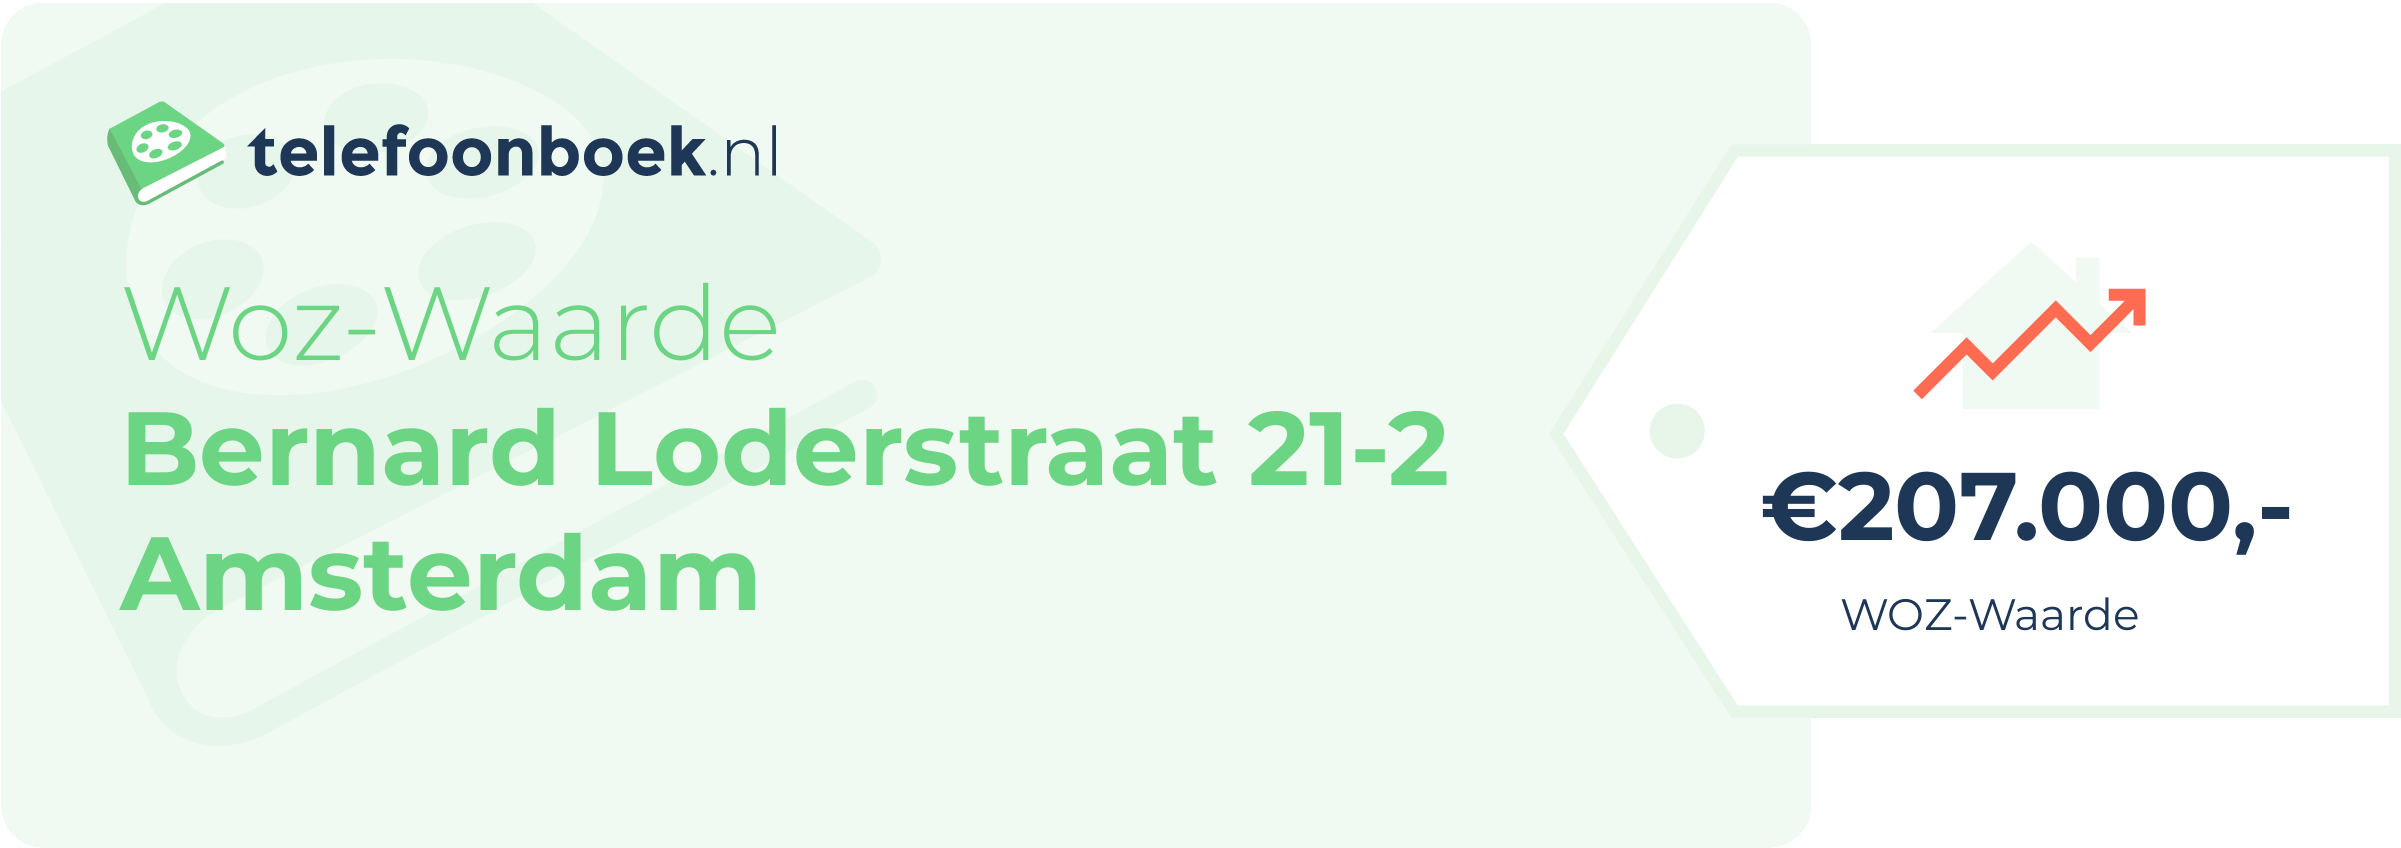 WOZ-waarde Bernard Loderstraat 21-2 Amsterdam